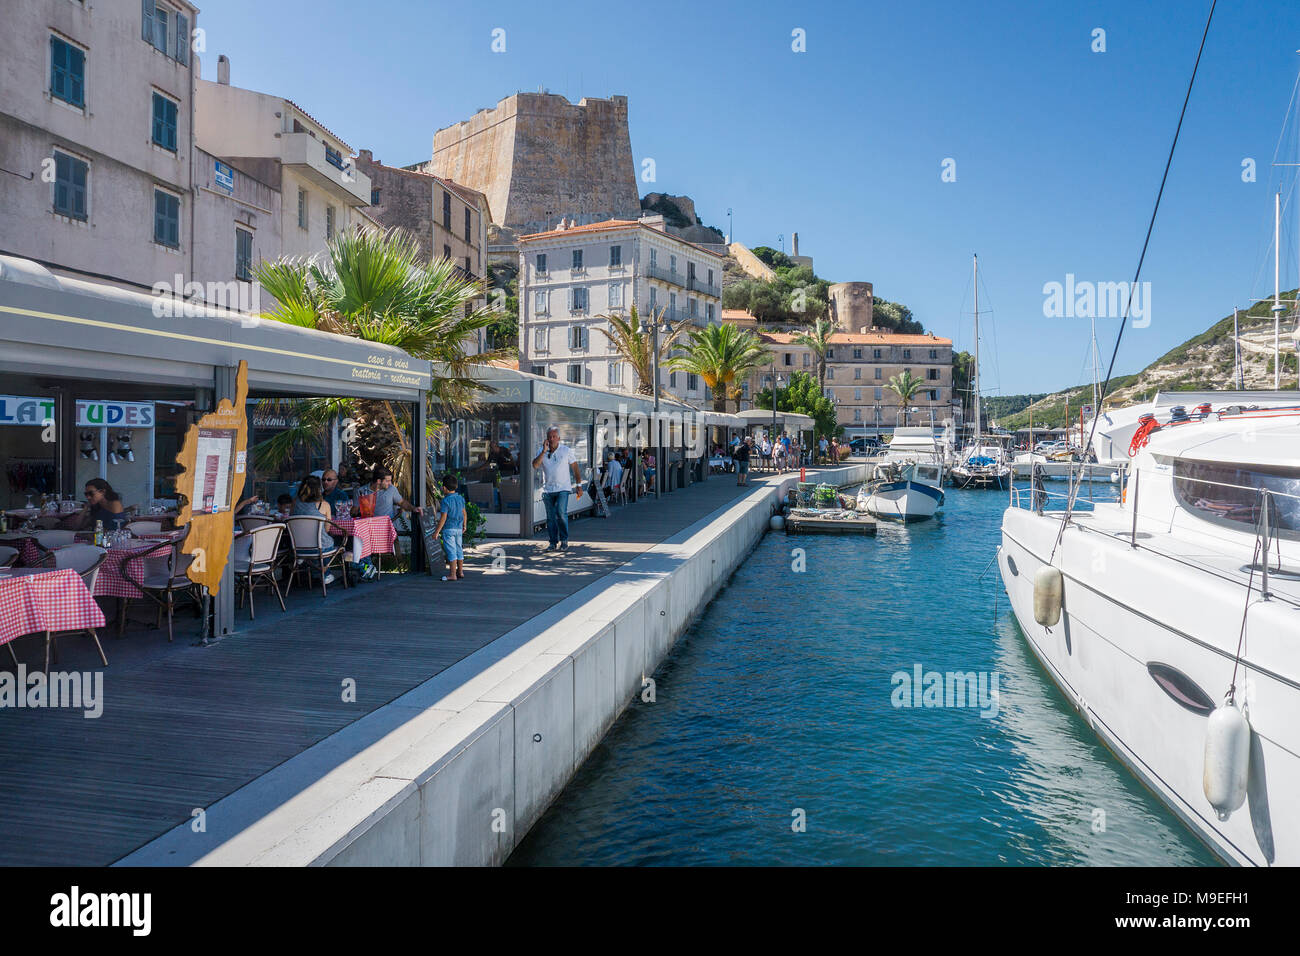 Port de plaisance et de pêche de Bonifacio, Corse, France, Europe, Méditerranée Banque D'Images